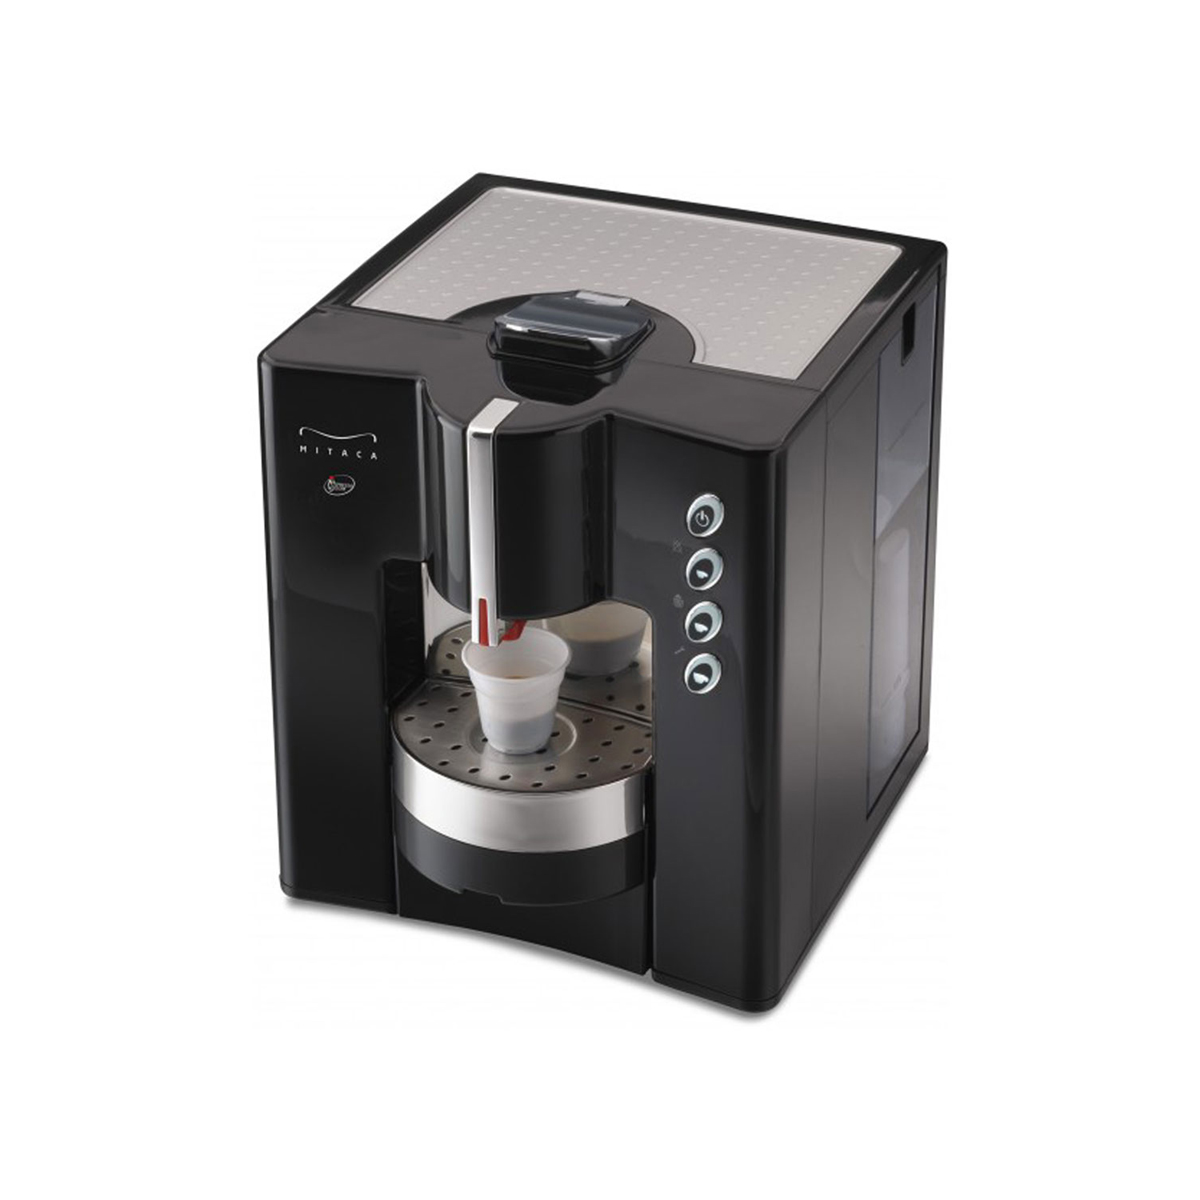 Machine à Café Illy Mitaca I3 (400 Doses)